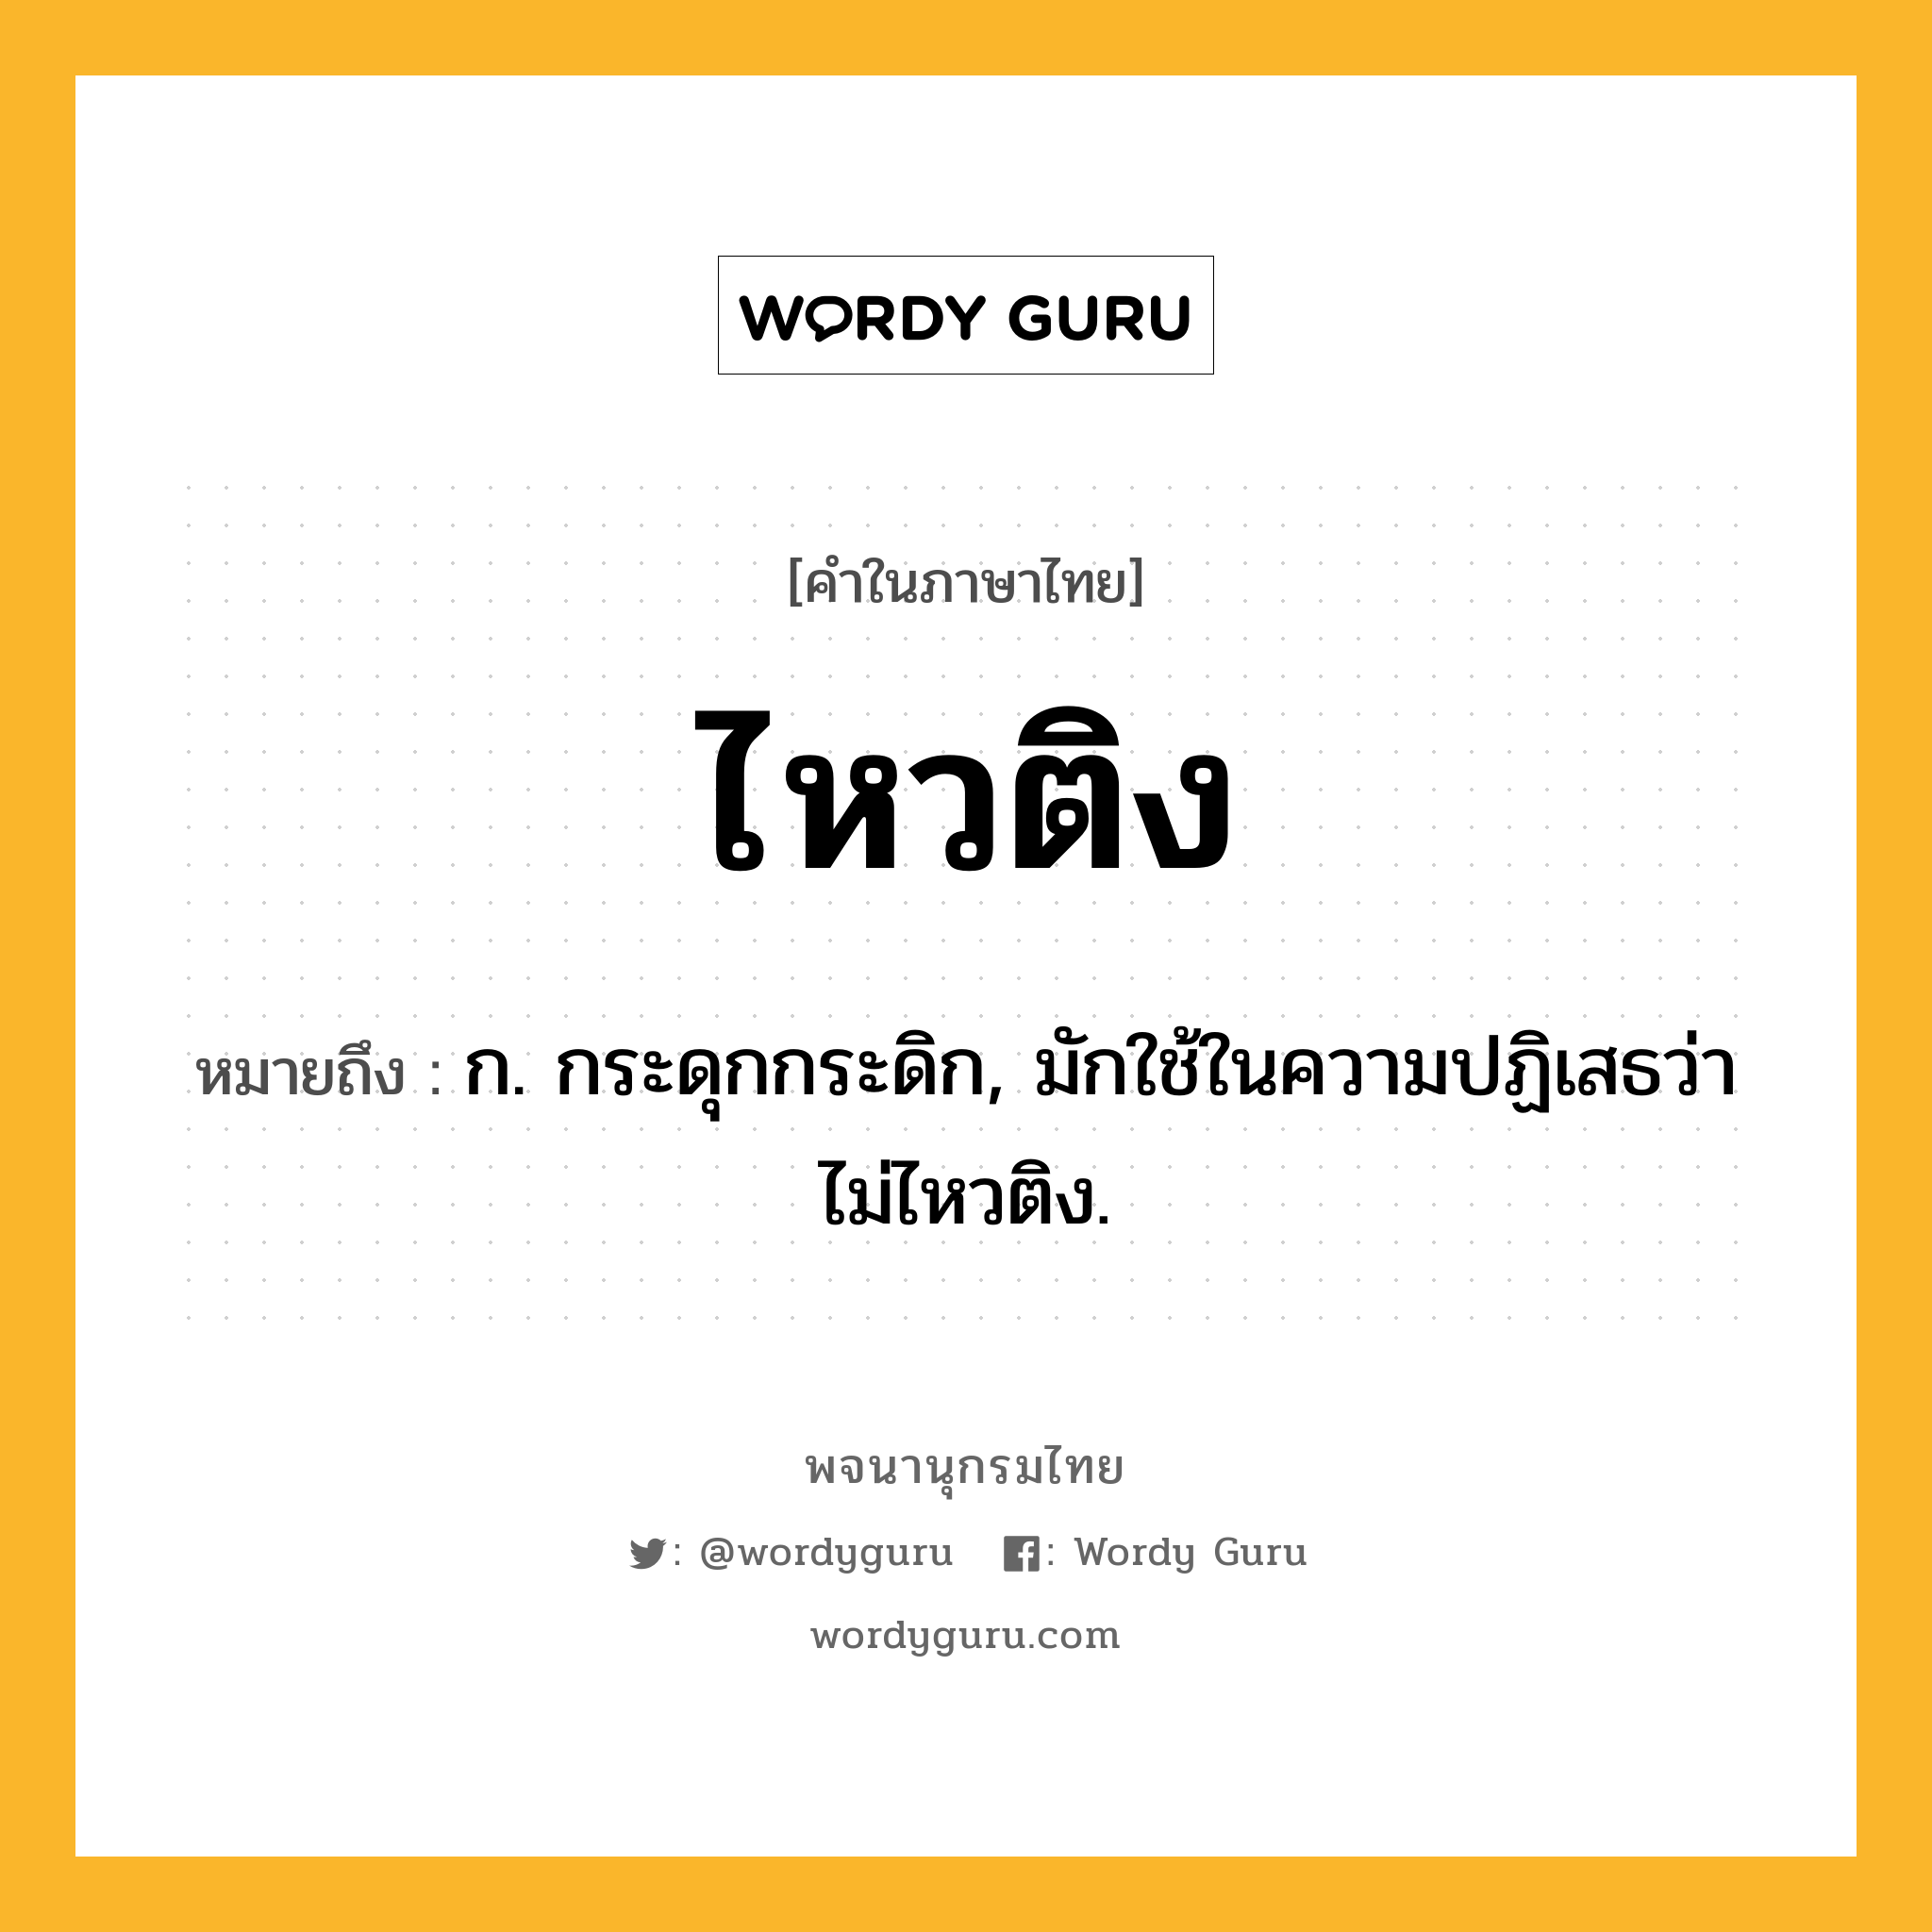 ไหวติง หมายถึงอะไร?, คำในภาษาไทย ไหวติง หมายถึง ก. กระดุกกระดิก, มักใช้ในความปฏิเสธว่า ไม่ไหวติง.